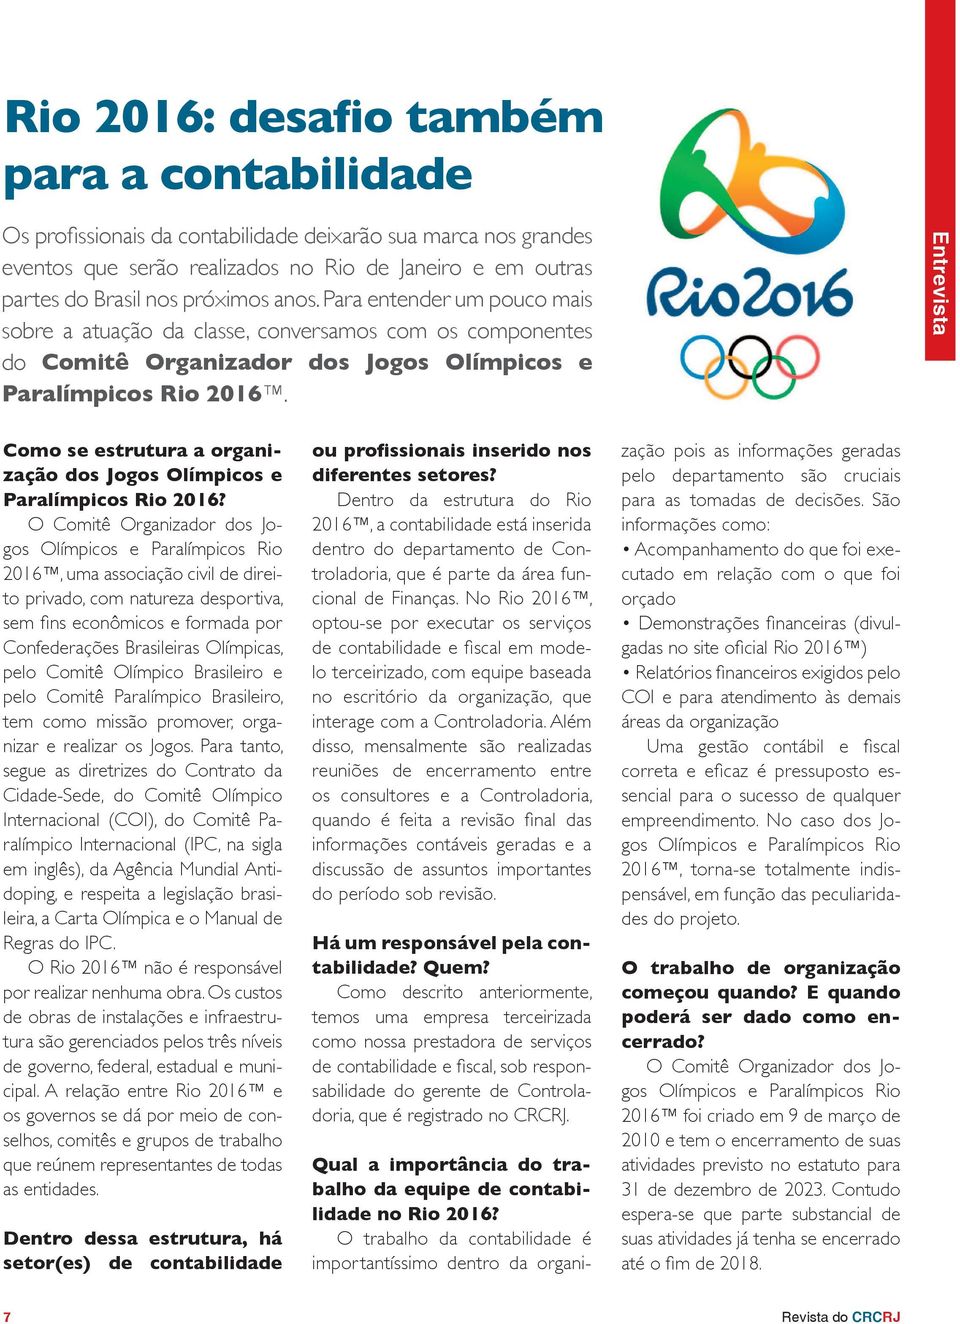 Entrevista Como se estrutura a organização dos Jogos Olímpicos e Paralímpicos Rio 2016?